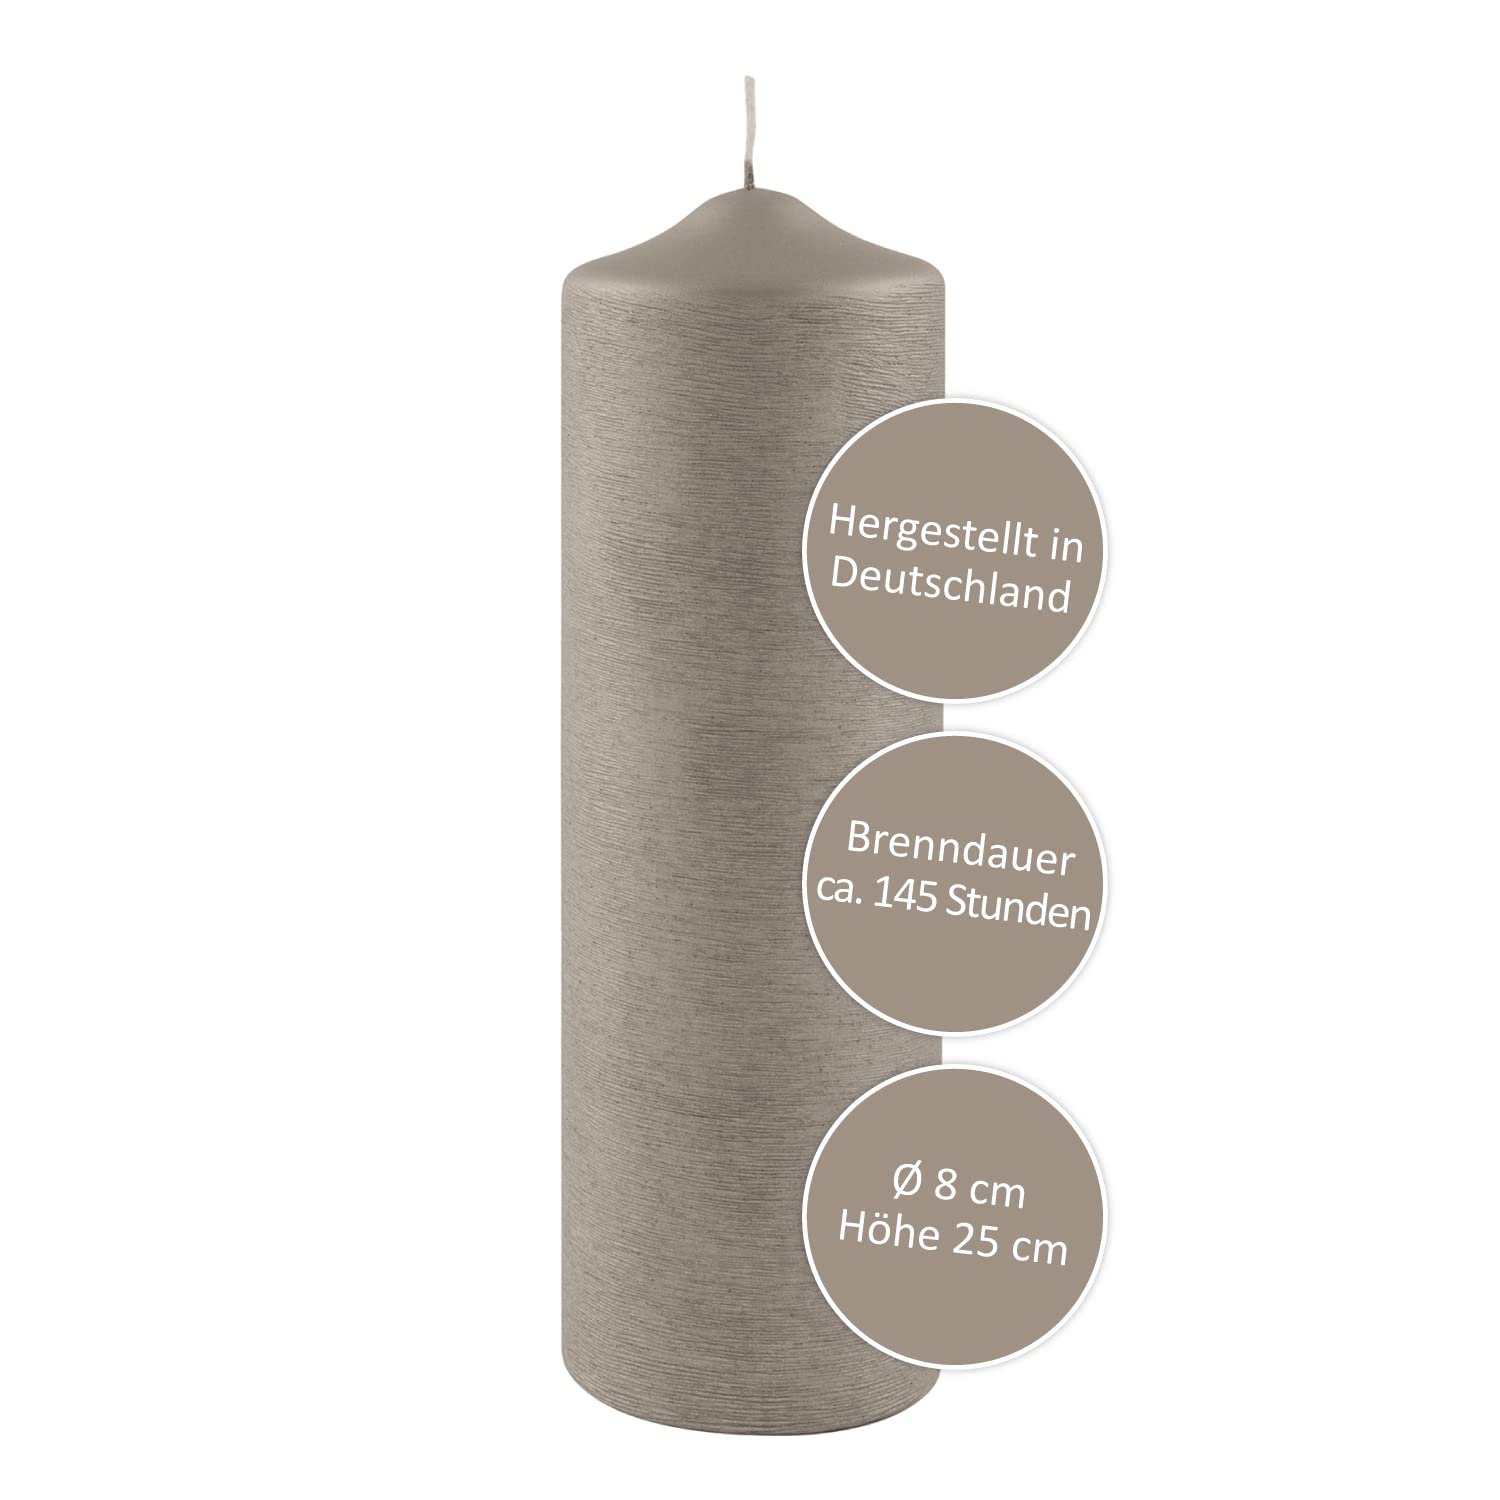 FINK graue Stumpen Kerze - festliche Tischdeko Silvester silberne Hochzeit runder Geburtstag - duftneutral rußarm - H 25 D 8 cm